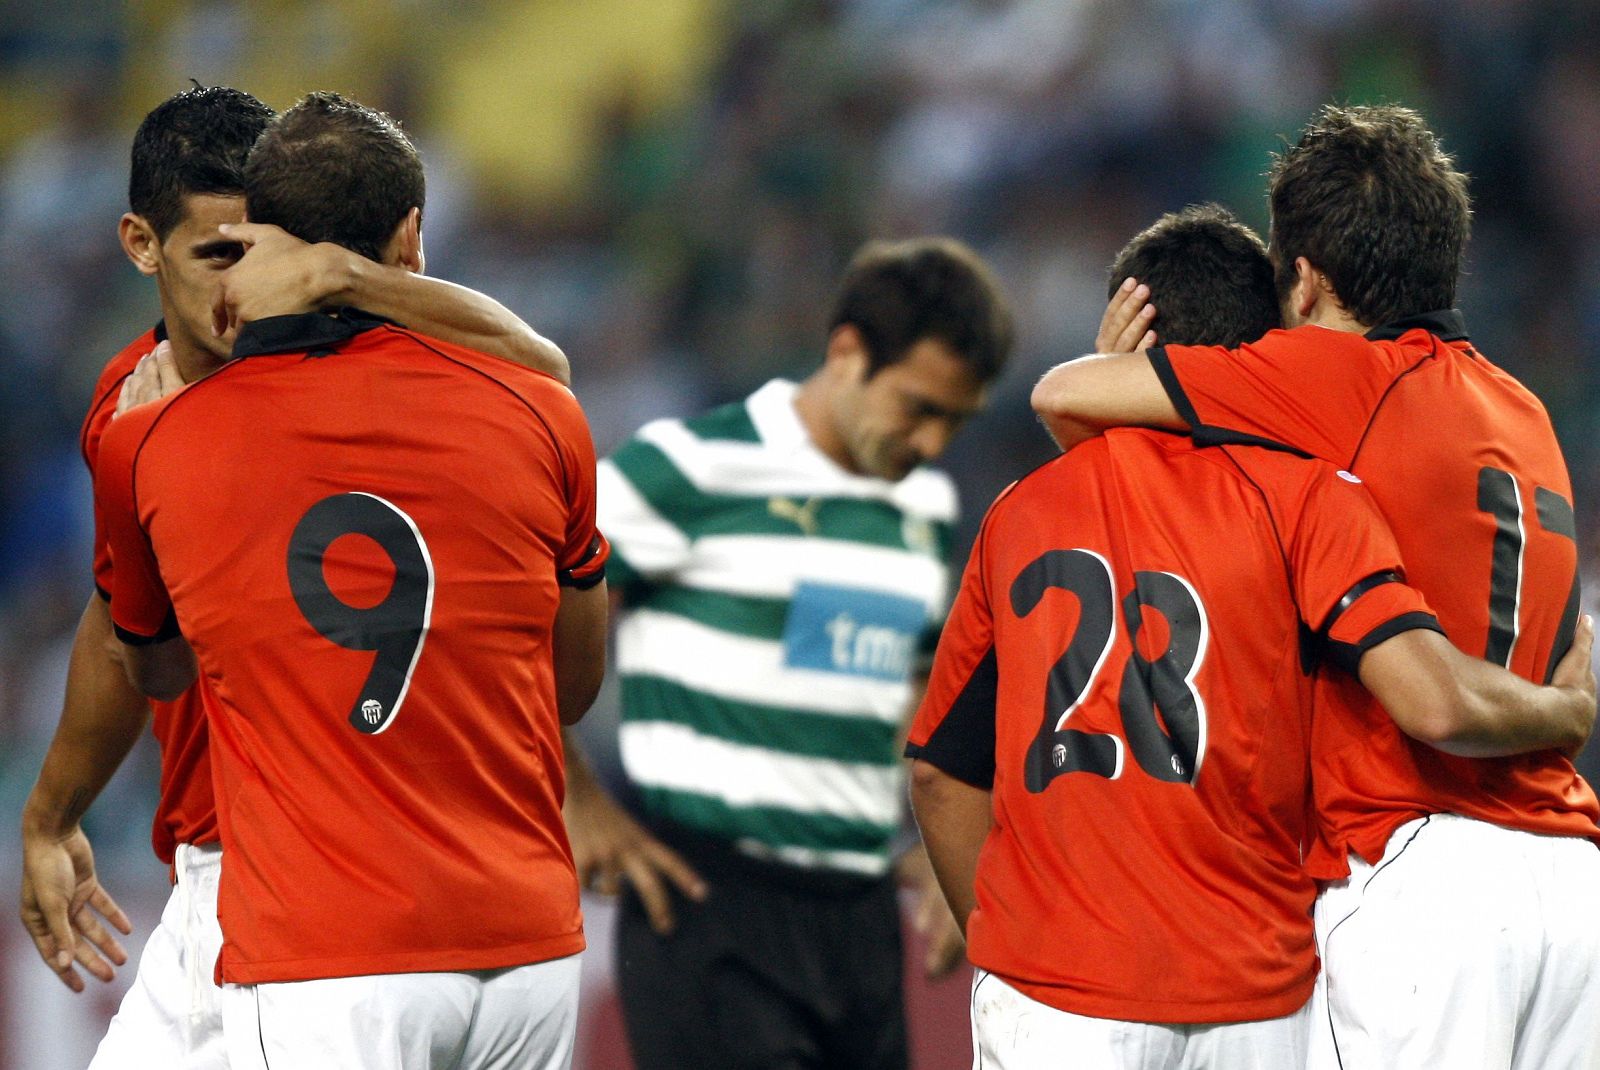 Bernat del Valencia CF (2i) celebra con sus compañeros tras marcar un gol al Sporting de Lisboa.